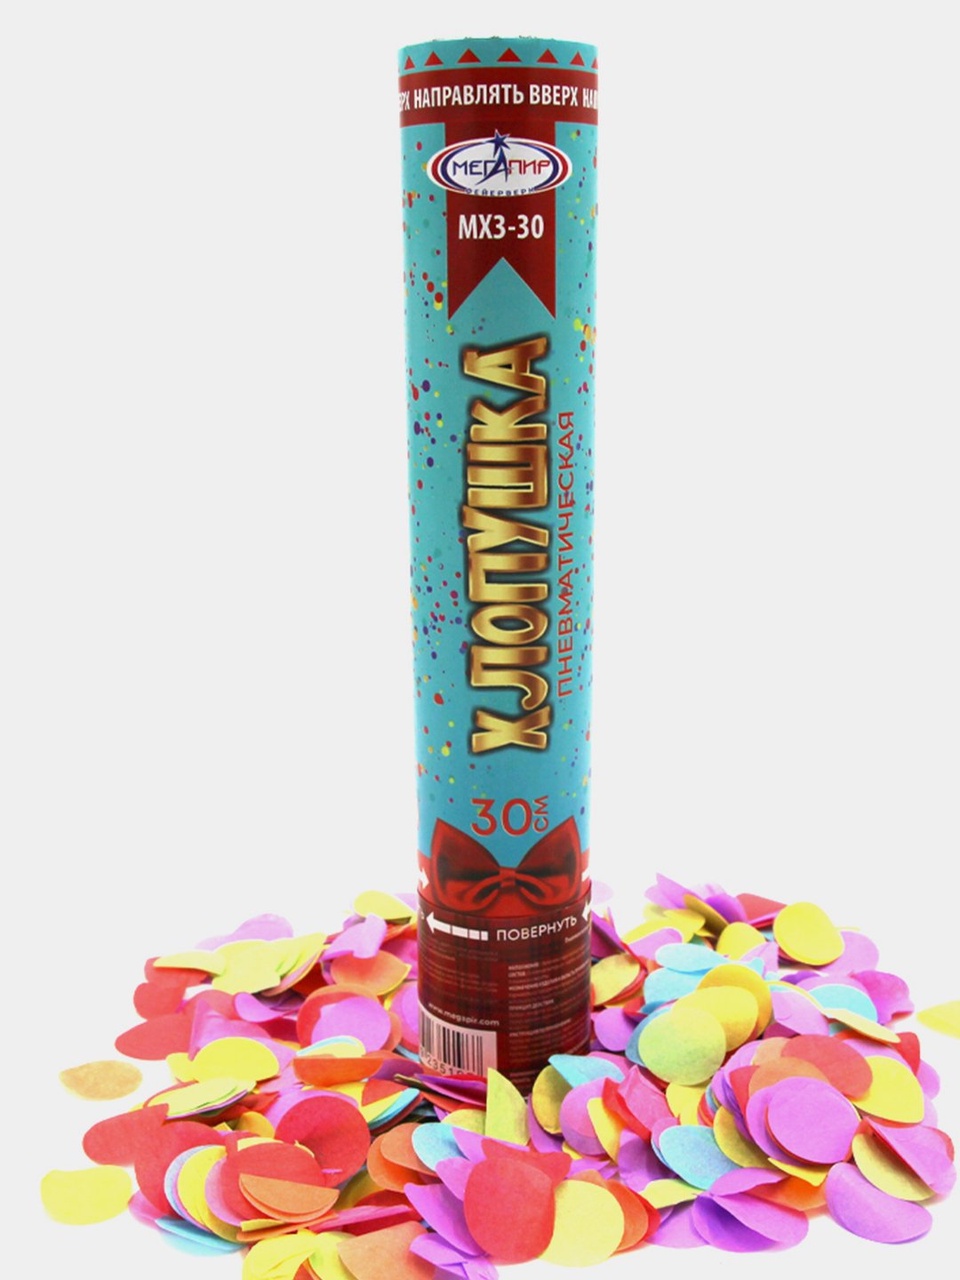 Пневматическая хлопушка 30 см наполнитель конфетти разноцветные круги из бумаги МХ3-30 - 200 ₽, заказать онлайн.